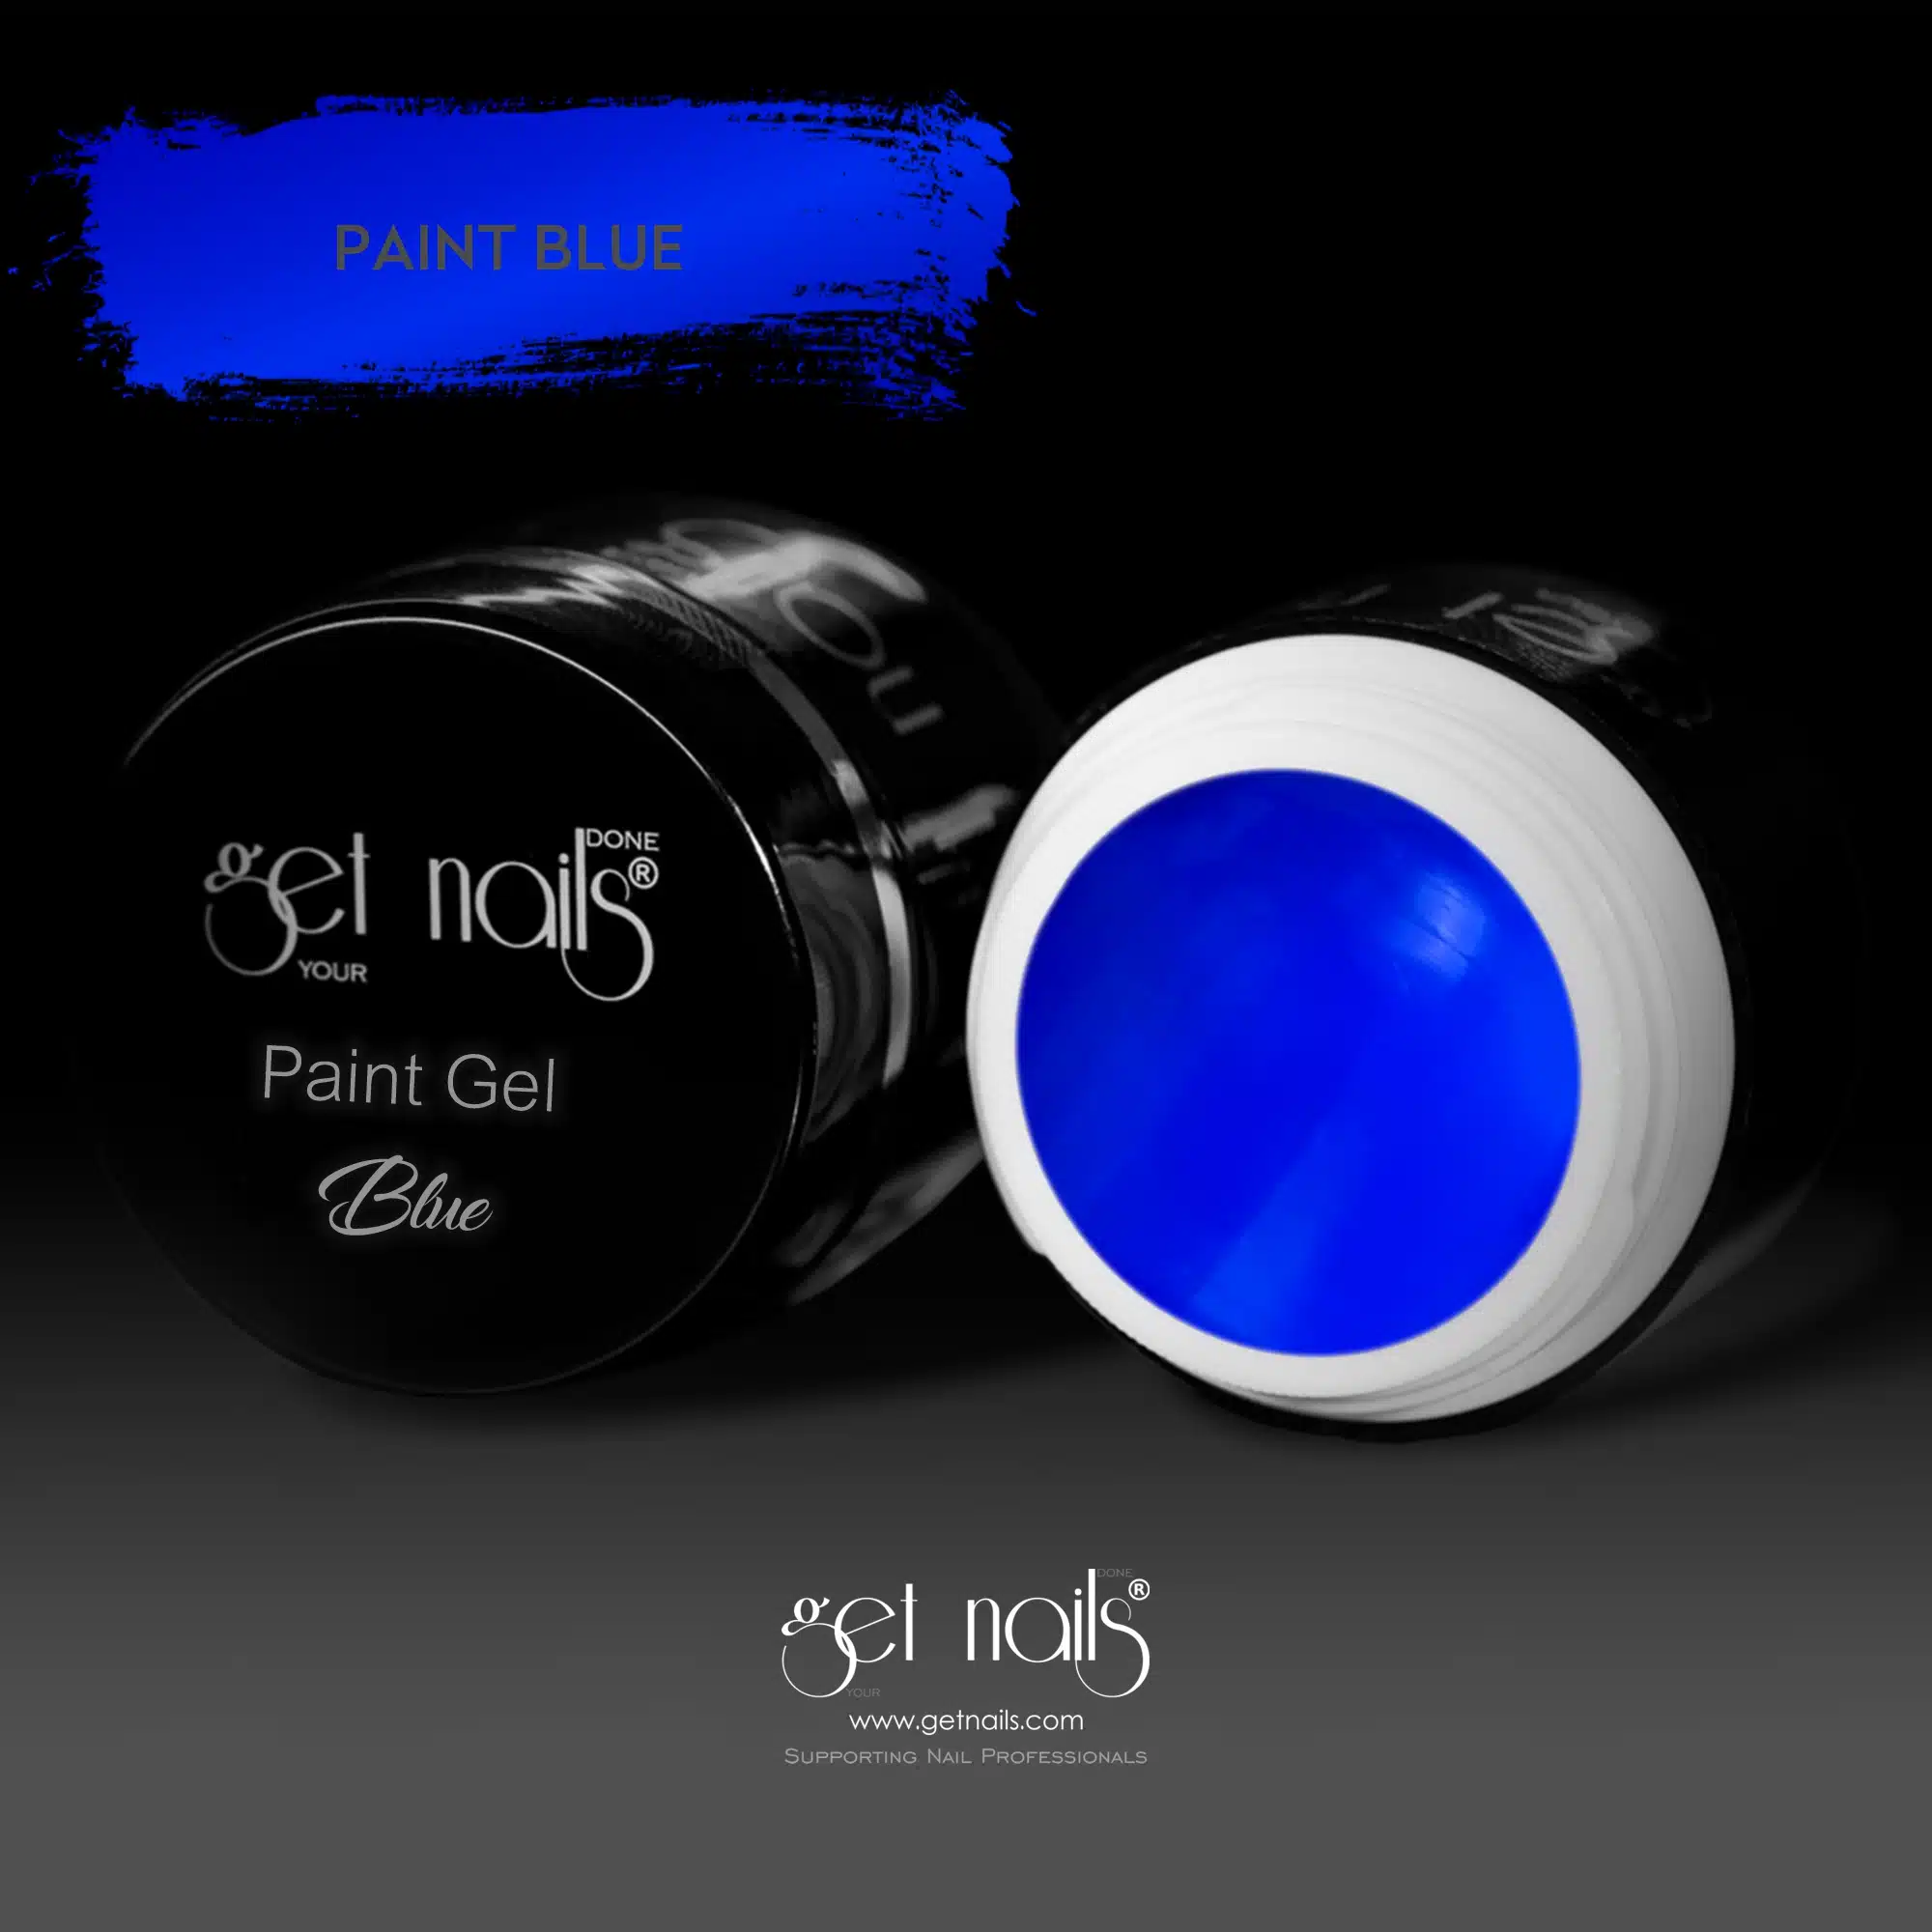 Get Nails Austria - Paint Gel Blue 5g